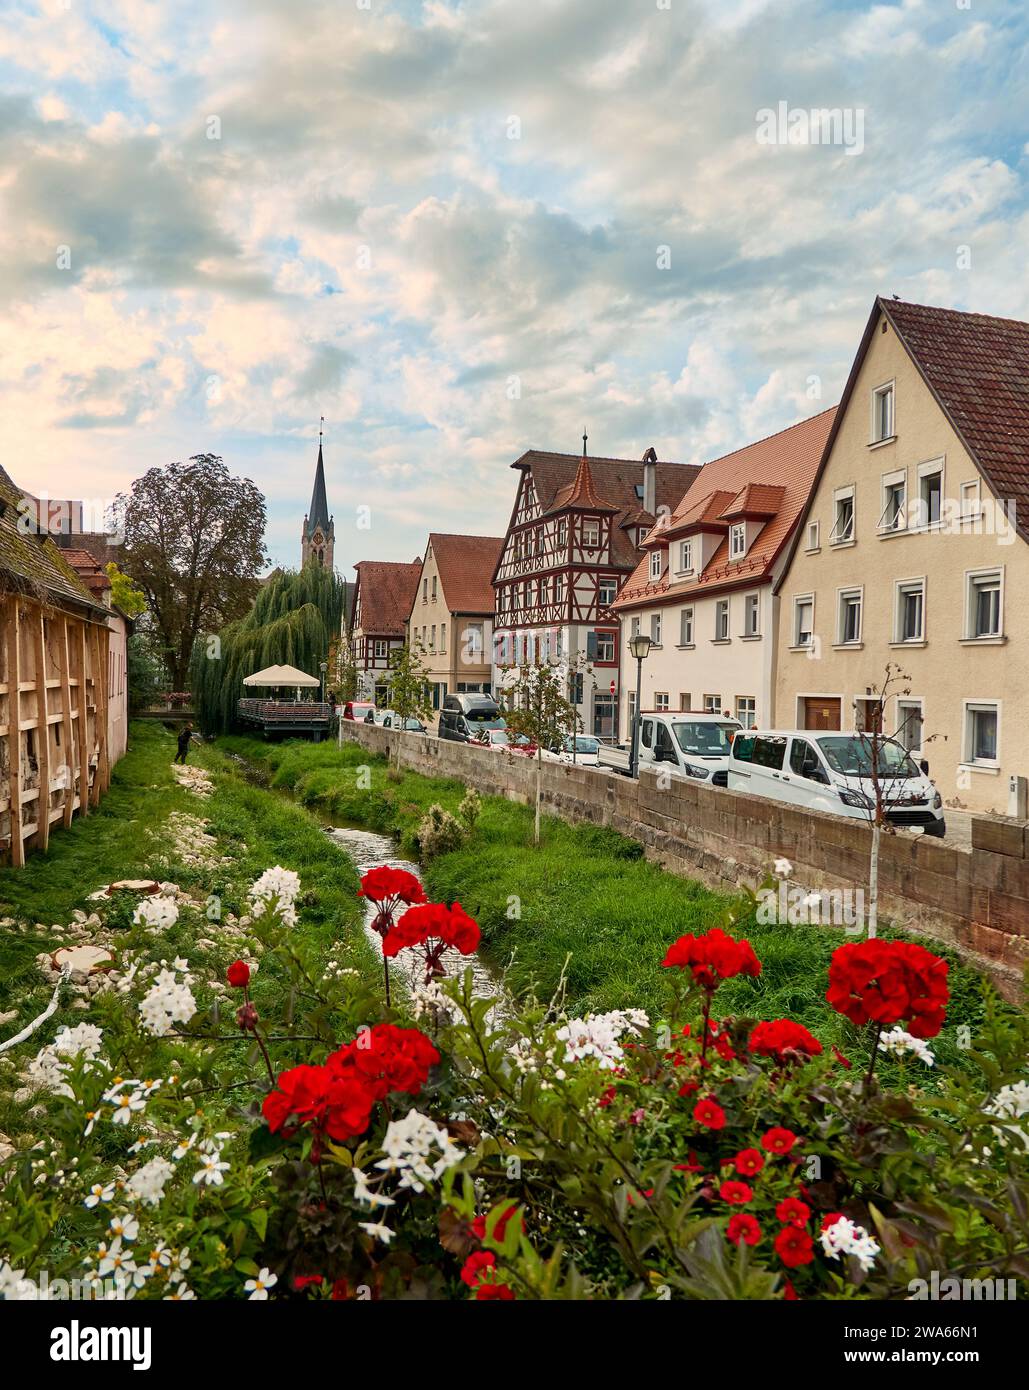 Composizioni floreali nella Bachgasse nel centro storico di Schwabach, di fronte a una romantica fila di case e a un piccolo ruscello Foto Stock